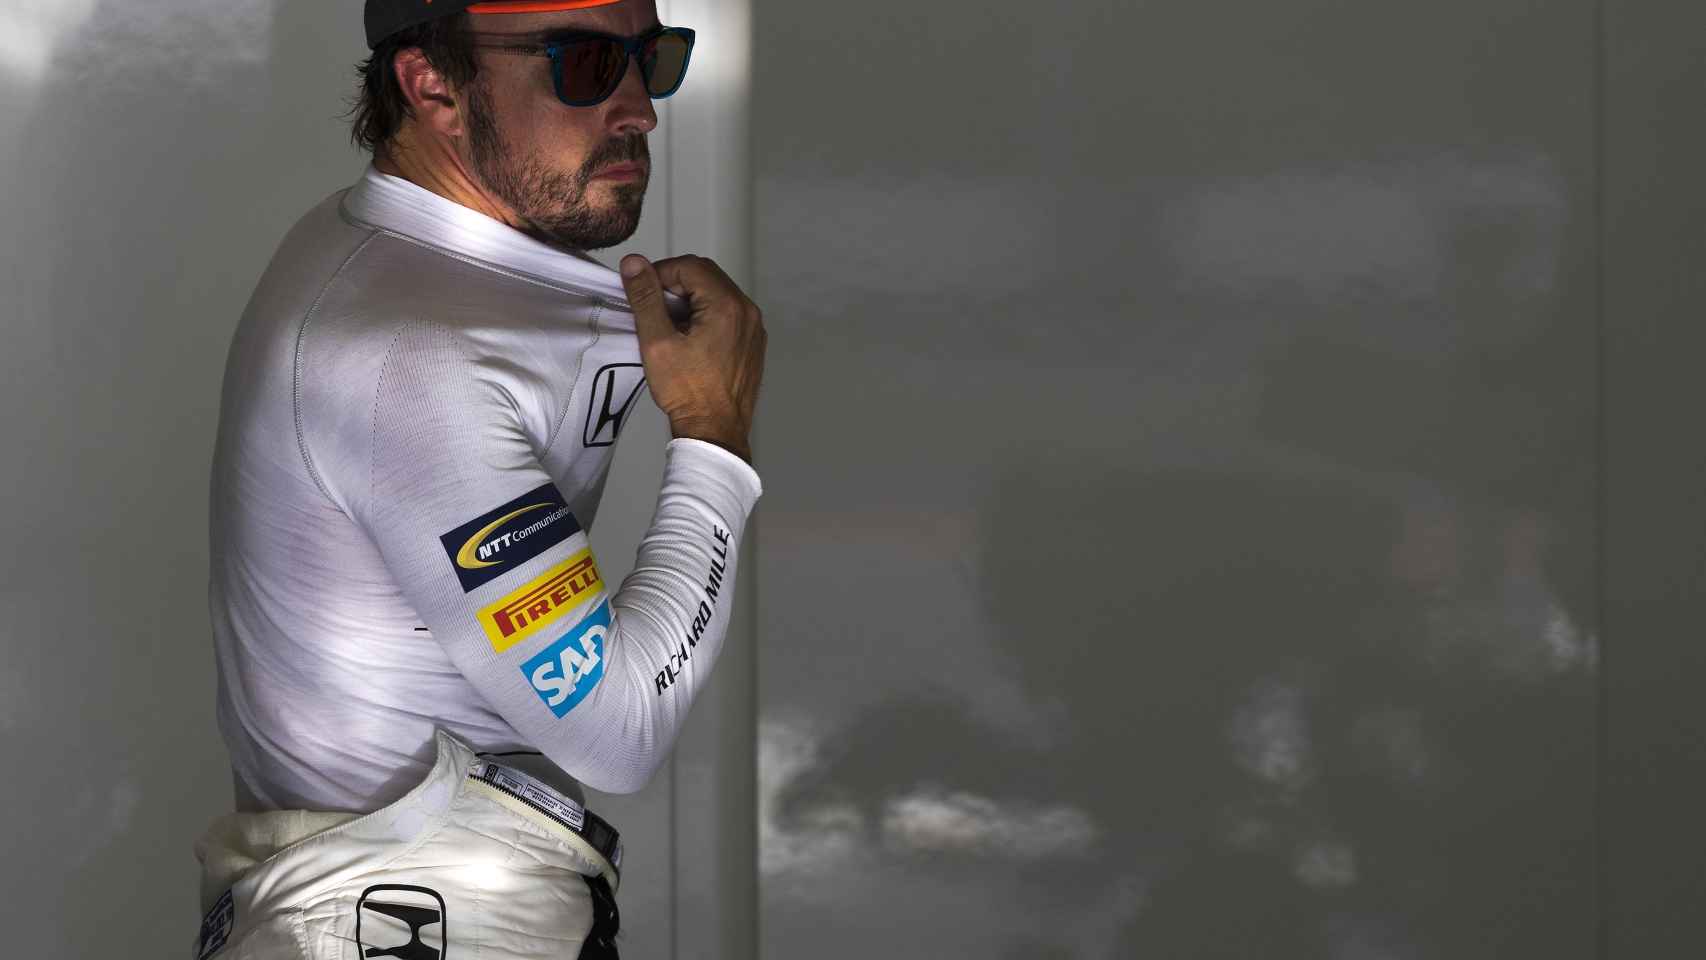 Fernando Alonso en su box.